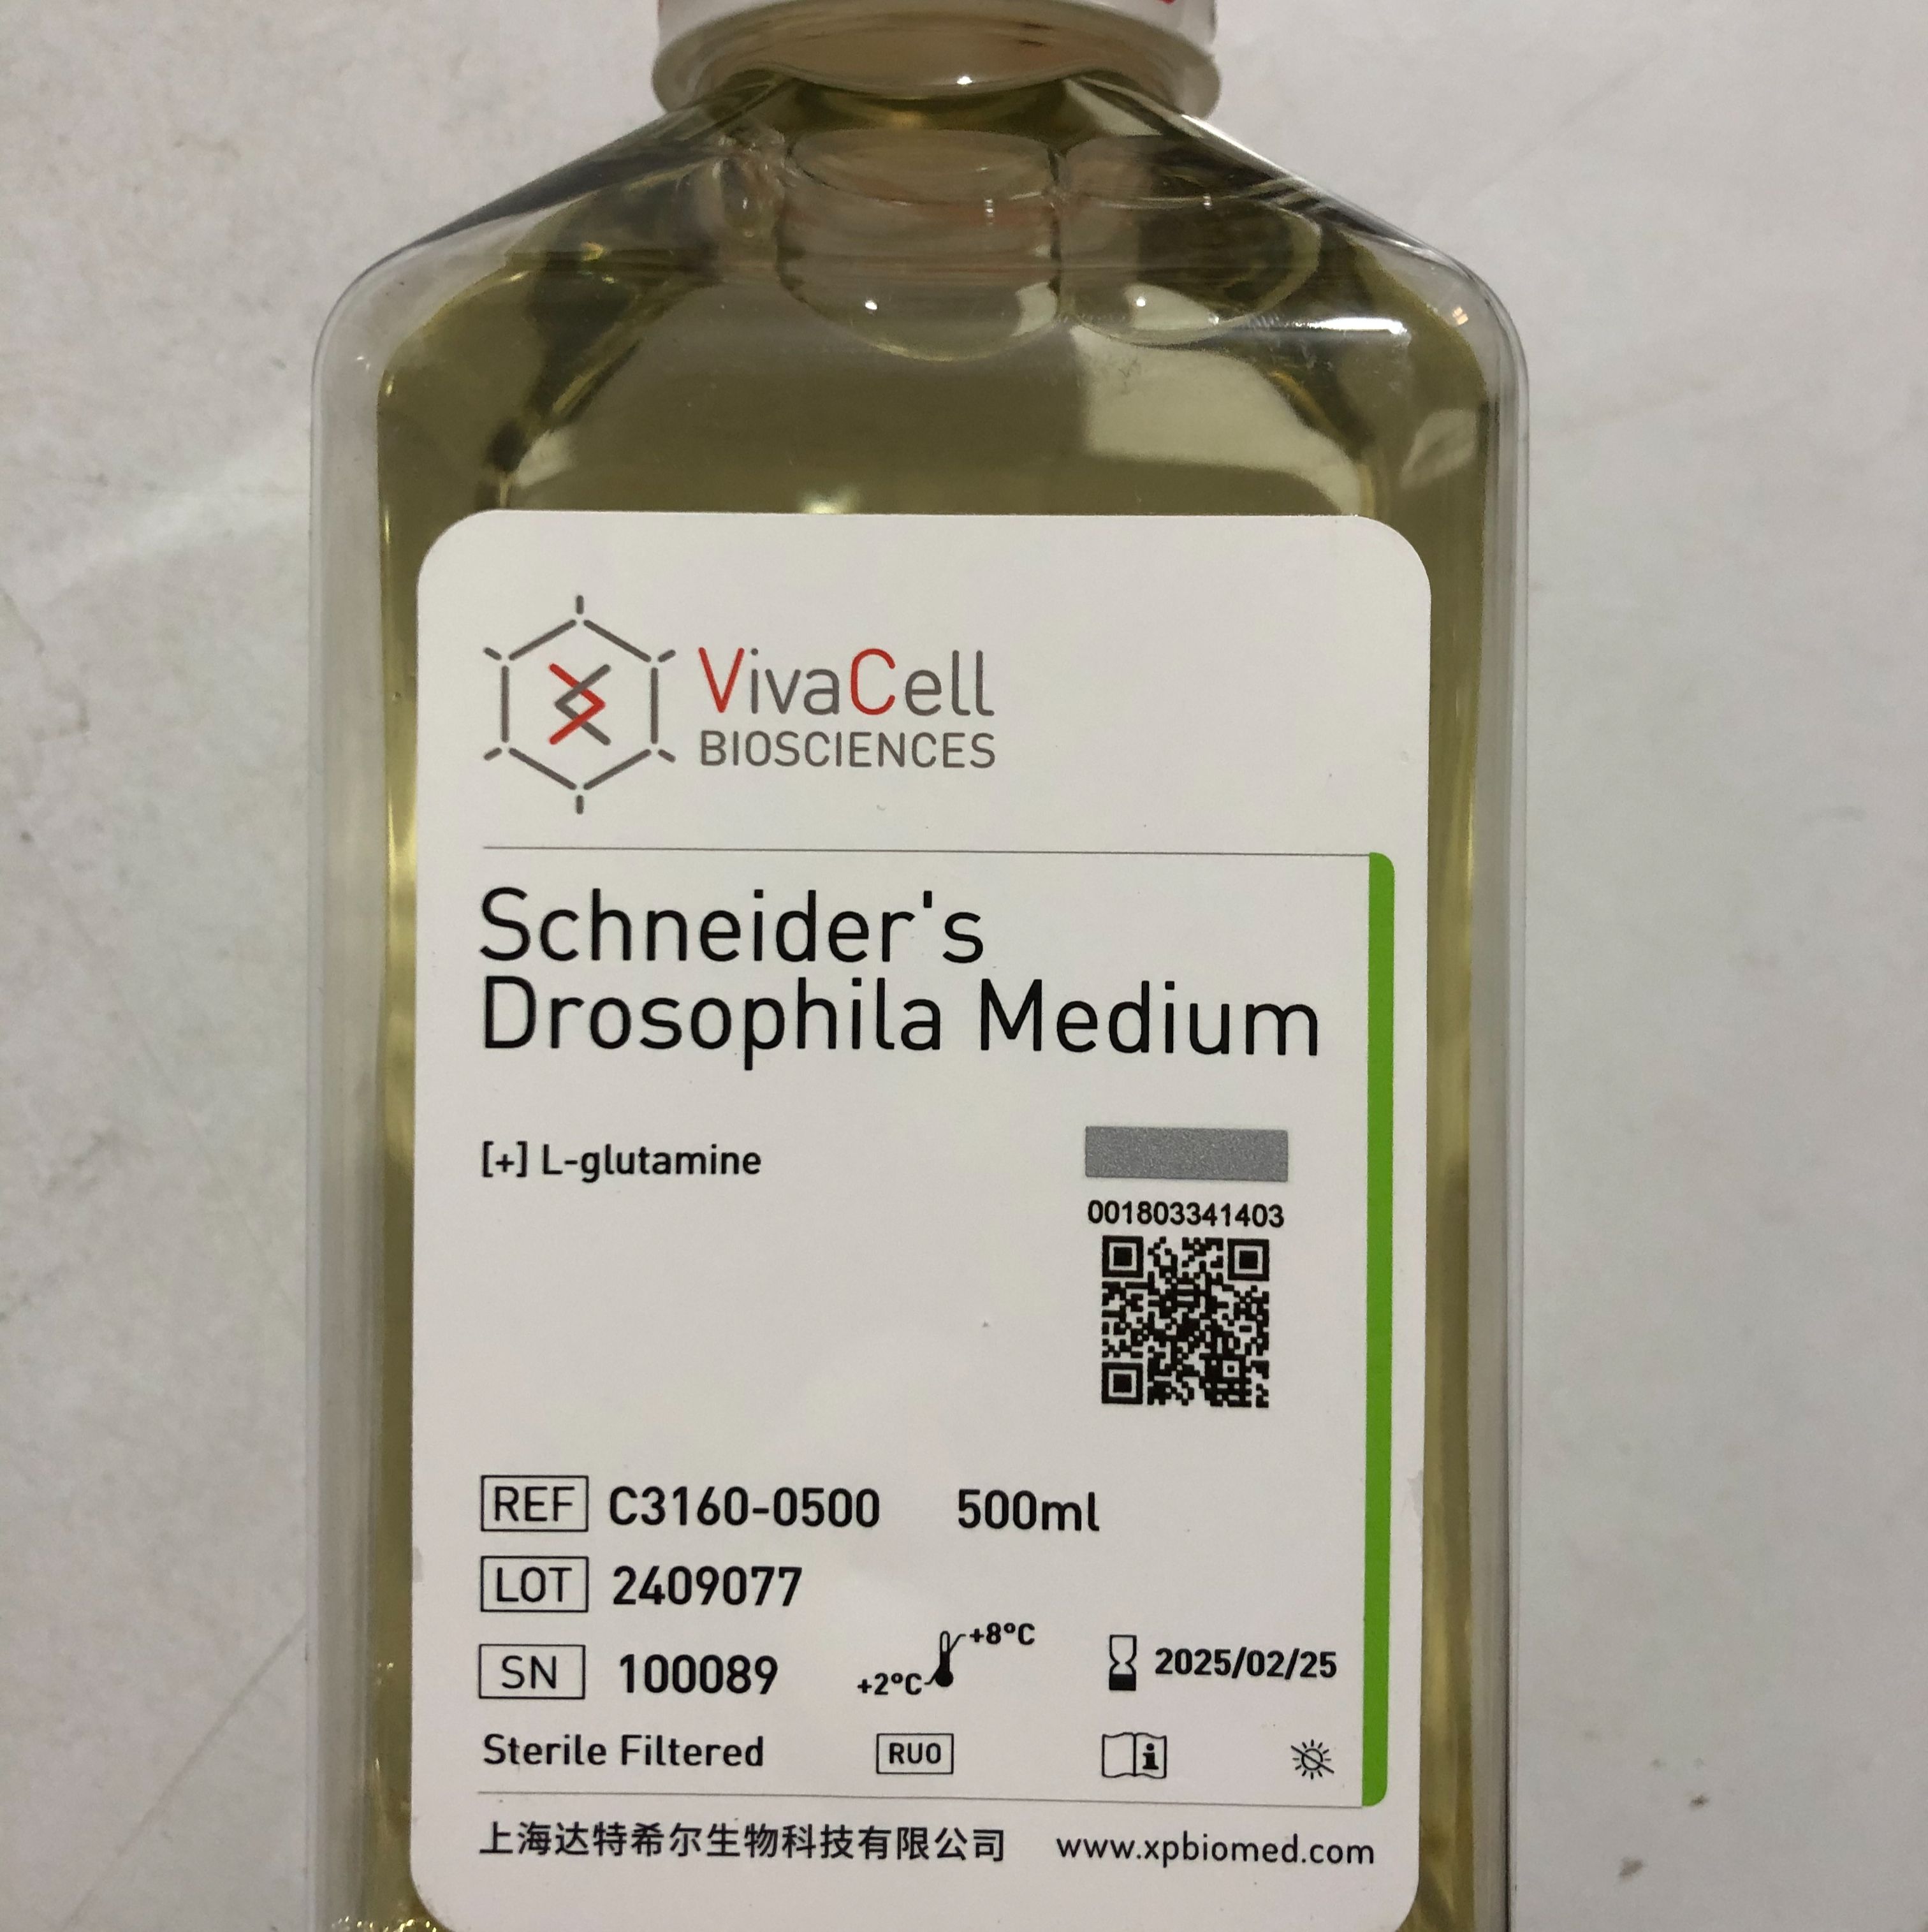 VivaCell货号C3160-0500施耐德的果蝇培养基(含谷氨酰胺)13611631389上海睿安生物